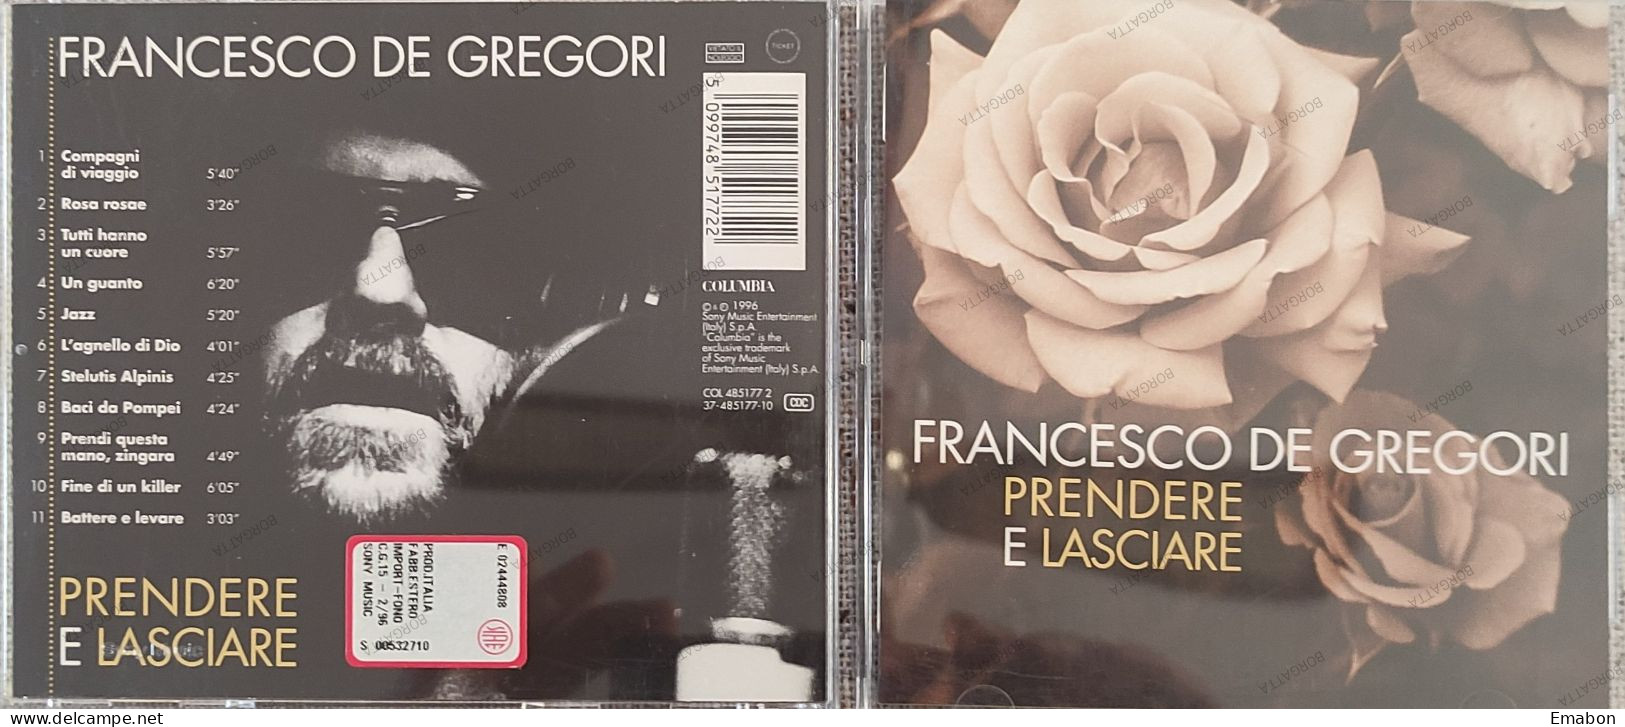 BORGATTA - ITALIANA - Cd FRANCESCO DE GREGORI - PRENDERE E LASCIARE - COLUMBIA  1996 -  USATO In Buono Stato - Autres - Musique Italienne